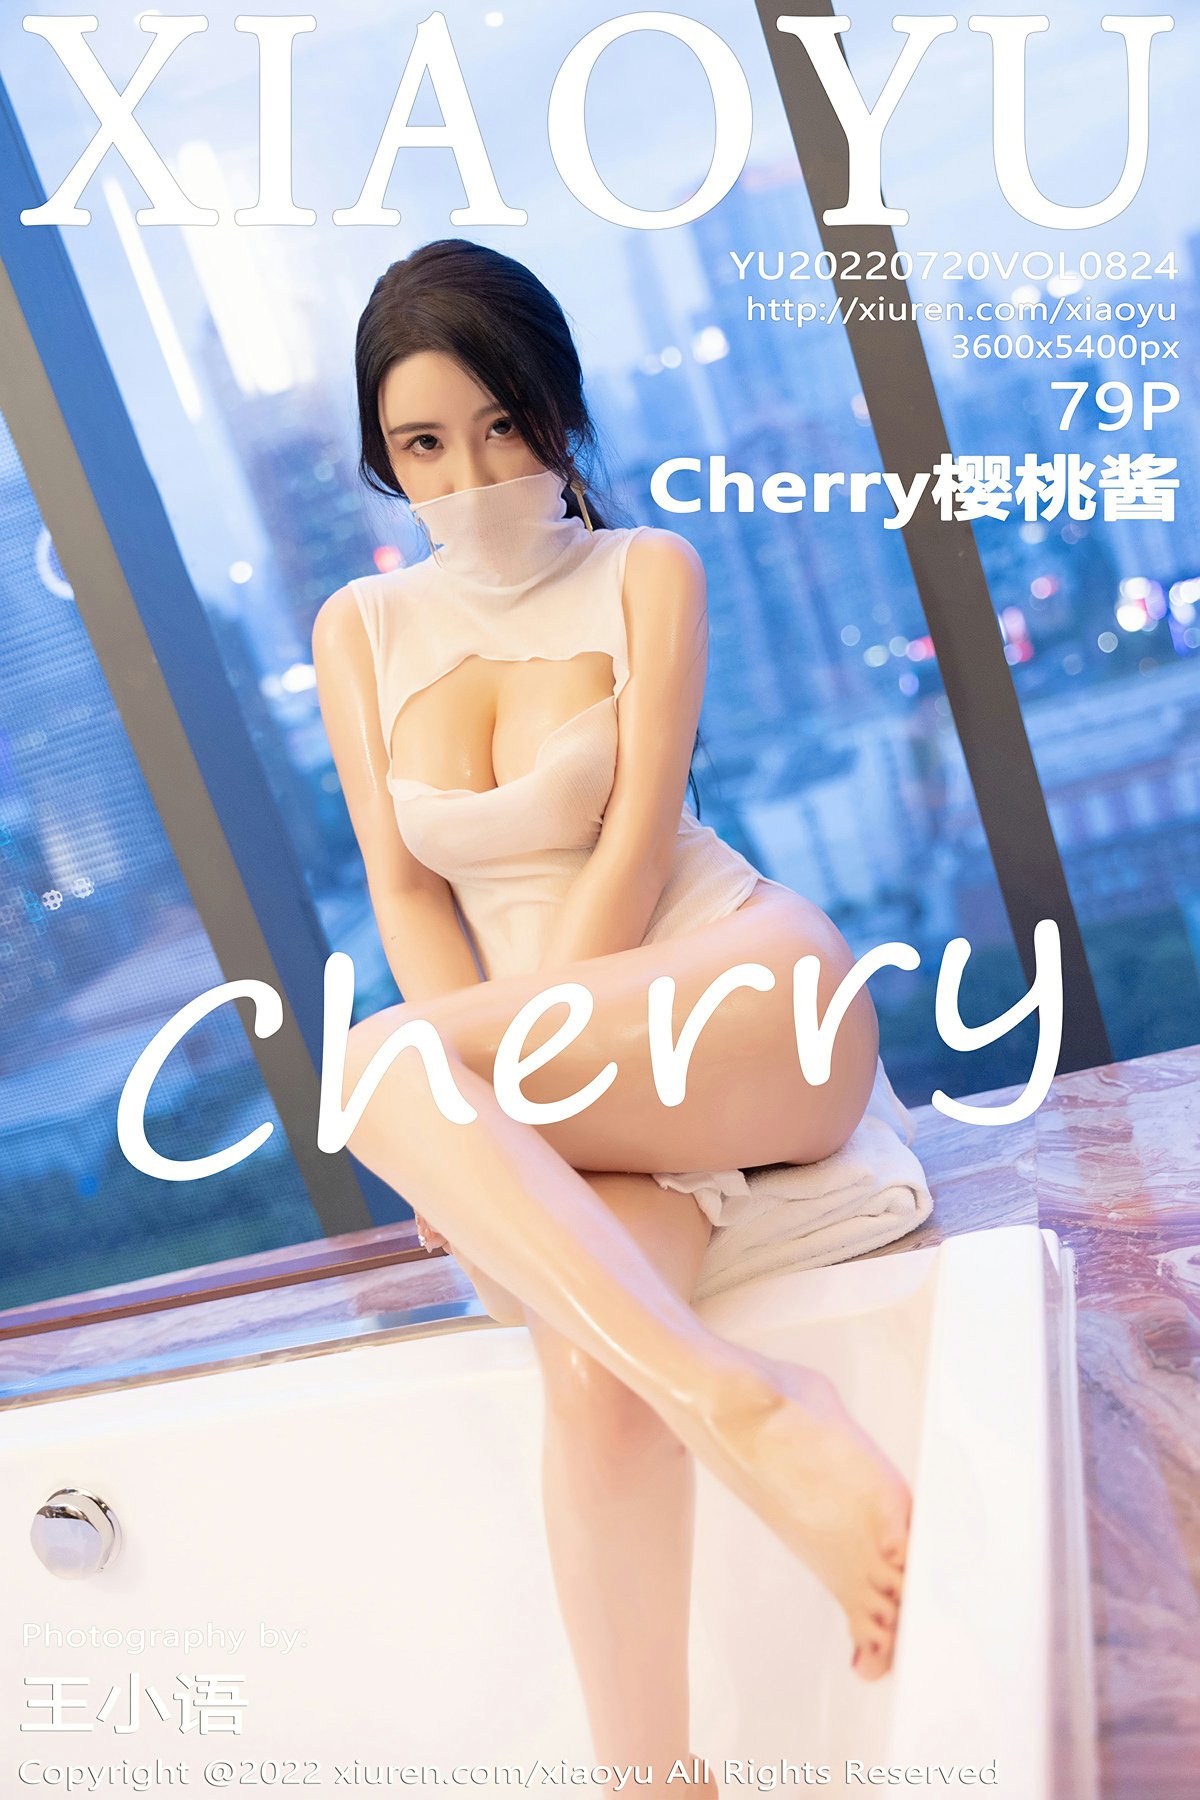 [XIAOYU语画界] 2022.07.20 VOL.824 Cherry樱桃酱